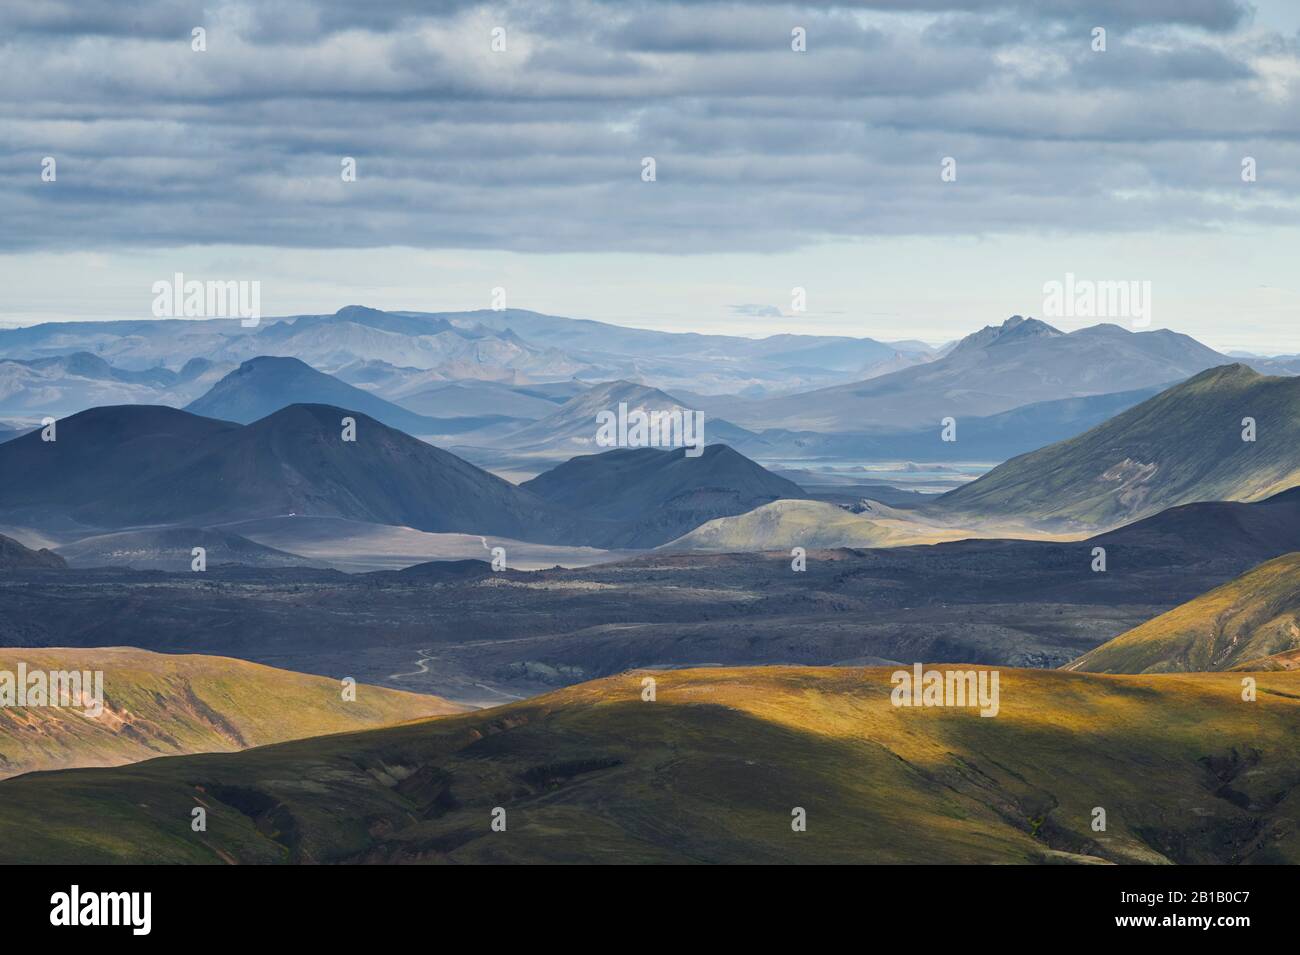 Majestätischer Dronblick auf grüne Hügel und Bergrücken gegen den grau bewölkten Himmel im isländischen Hochland Stockfoto